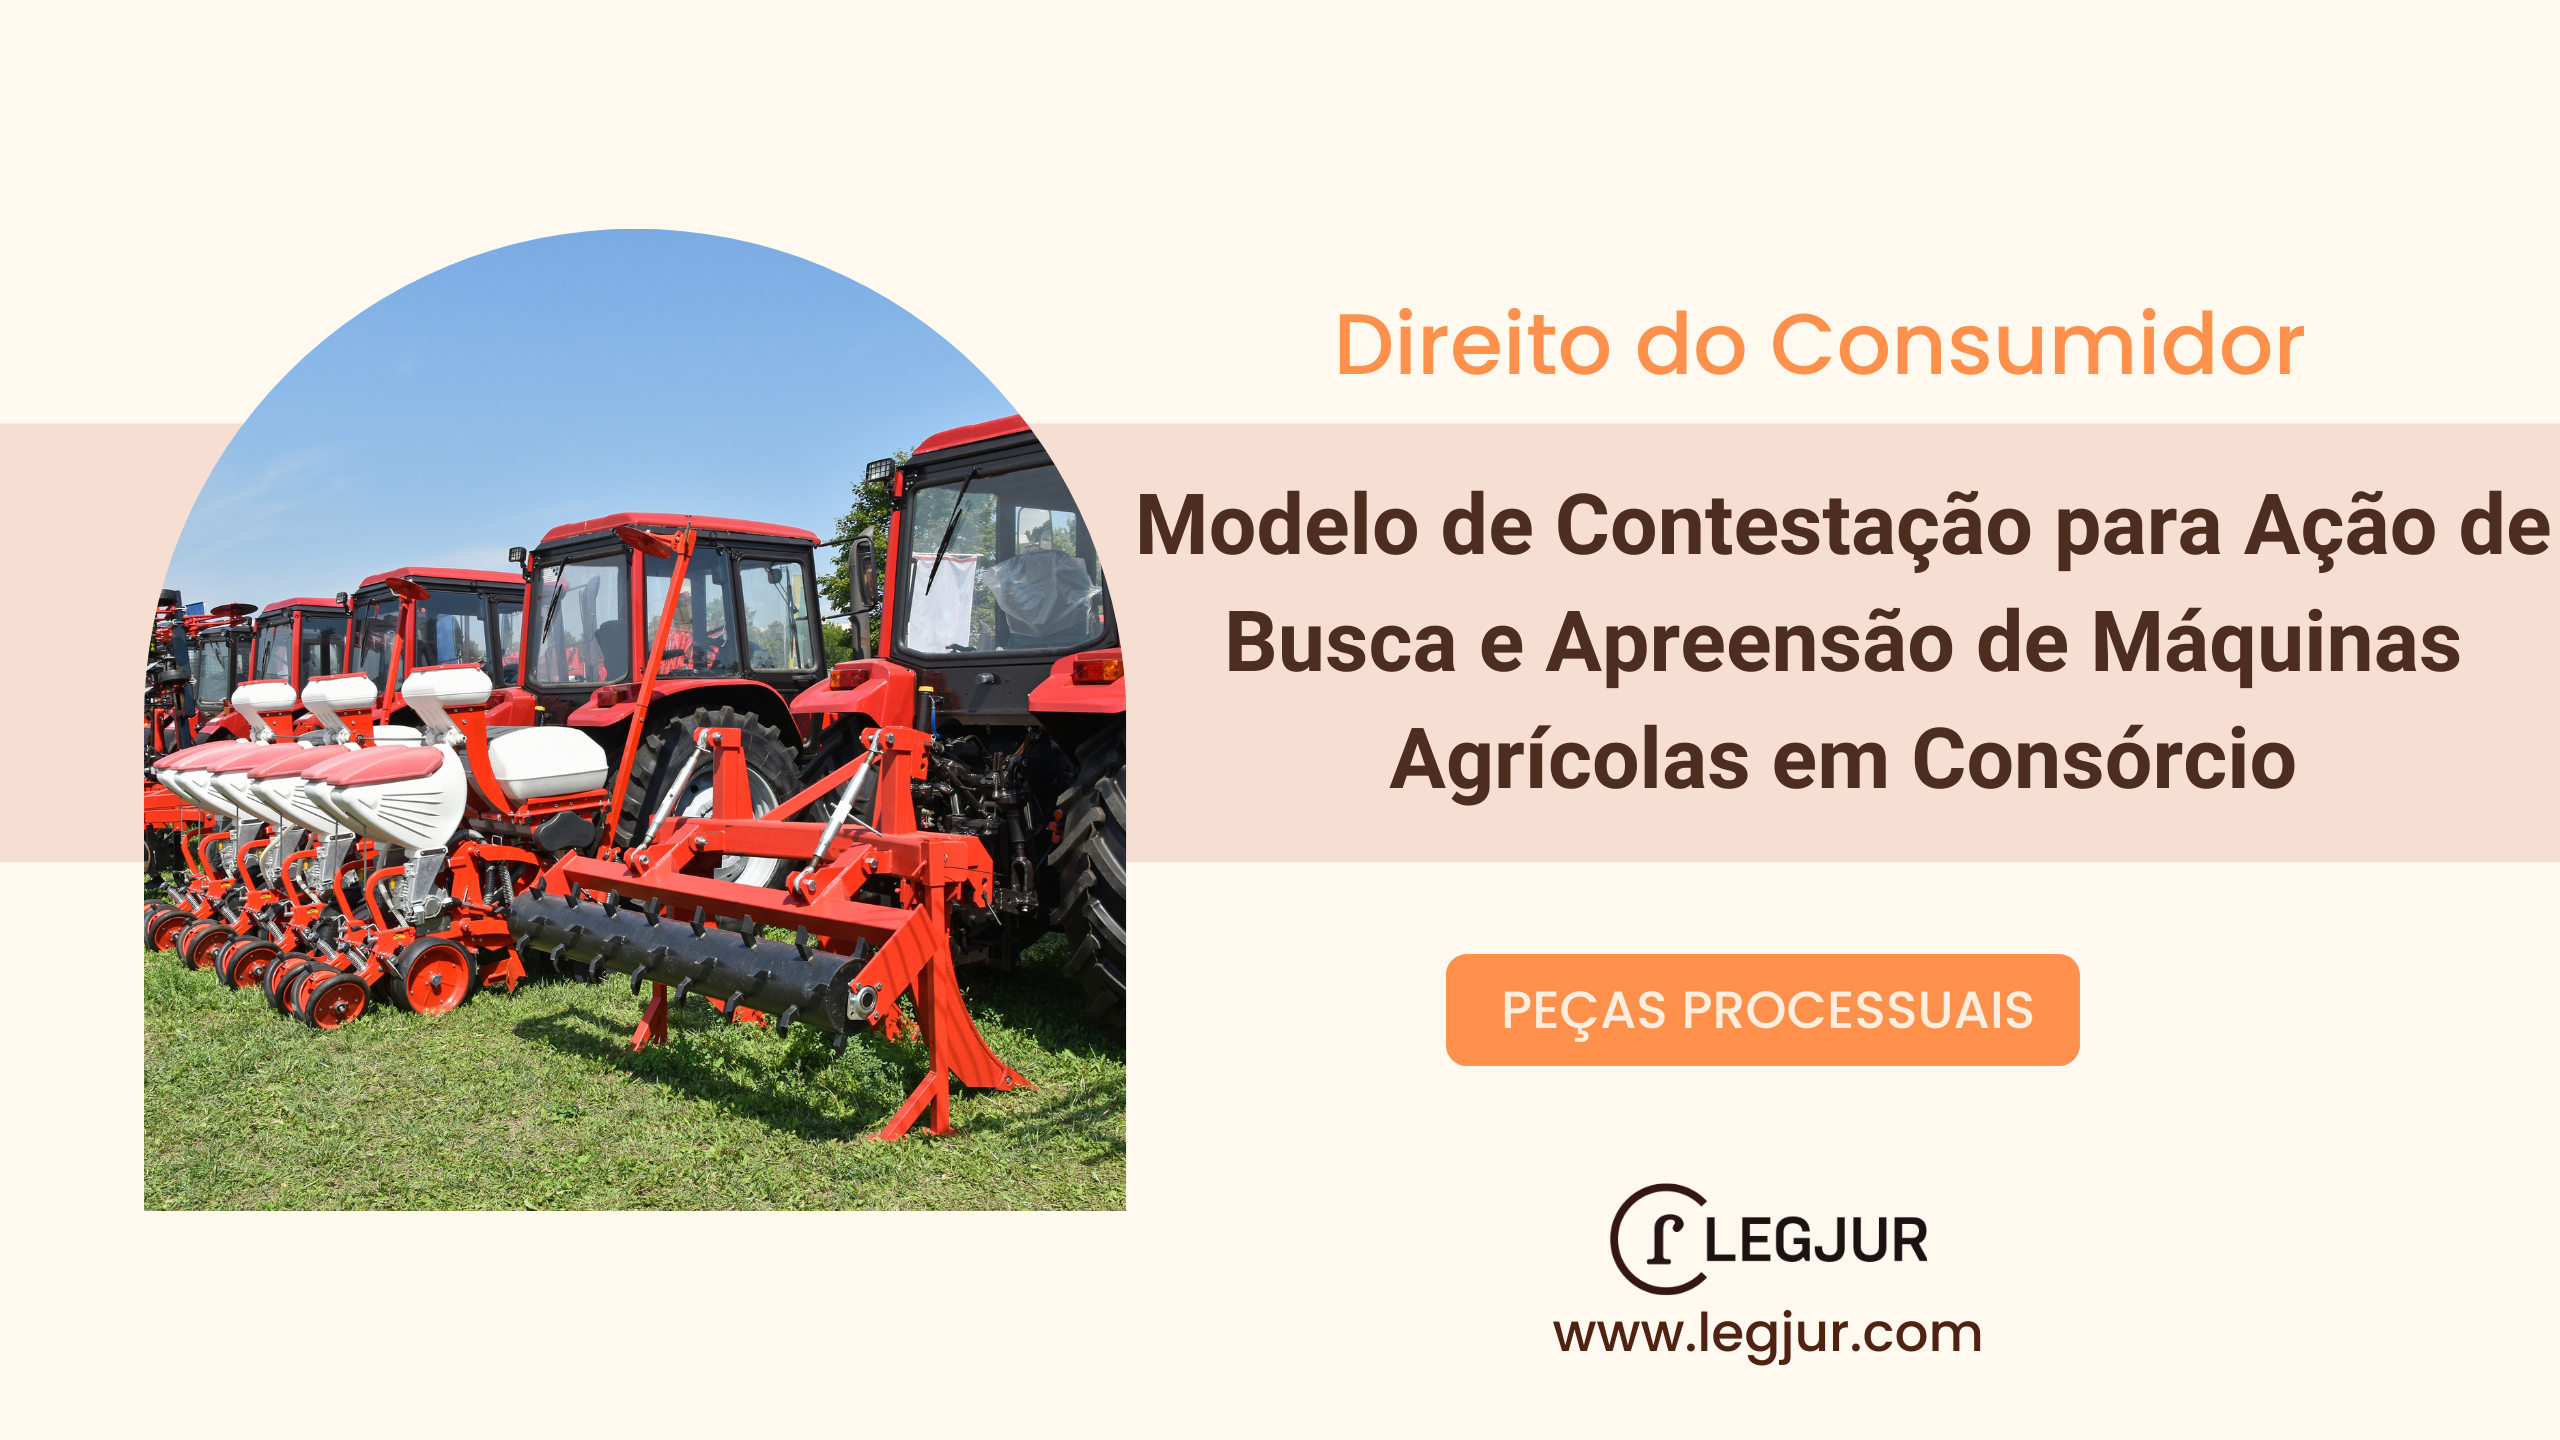 Modelo de Contestação para Ação de Busca e Apreensão de Máquinas Agrícolas em Consórcio